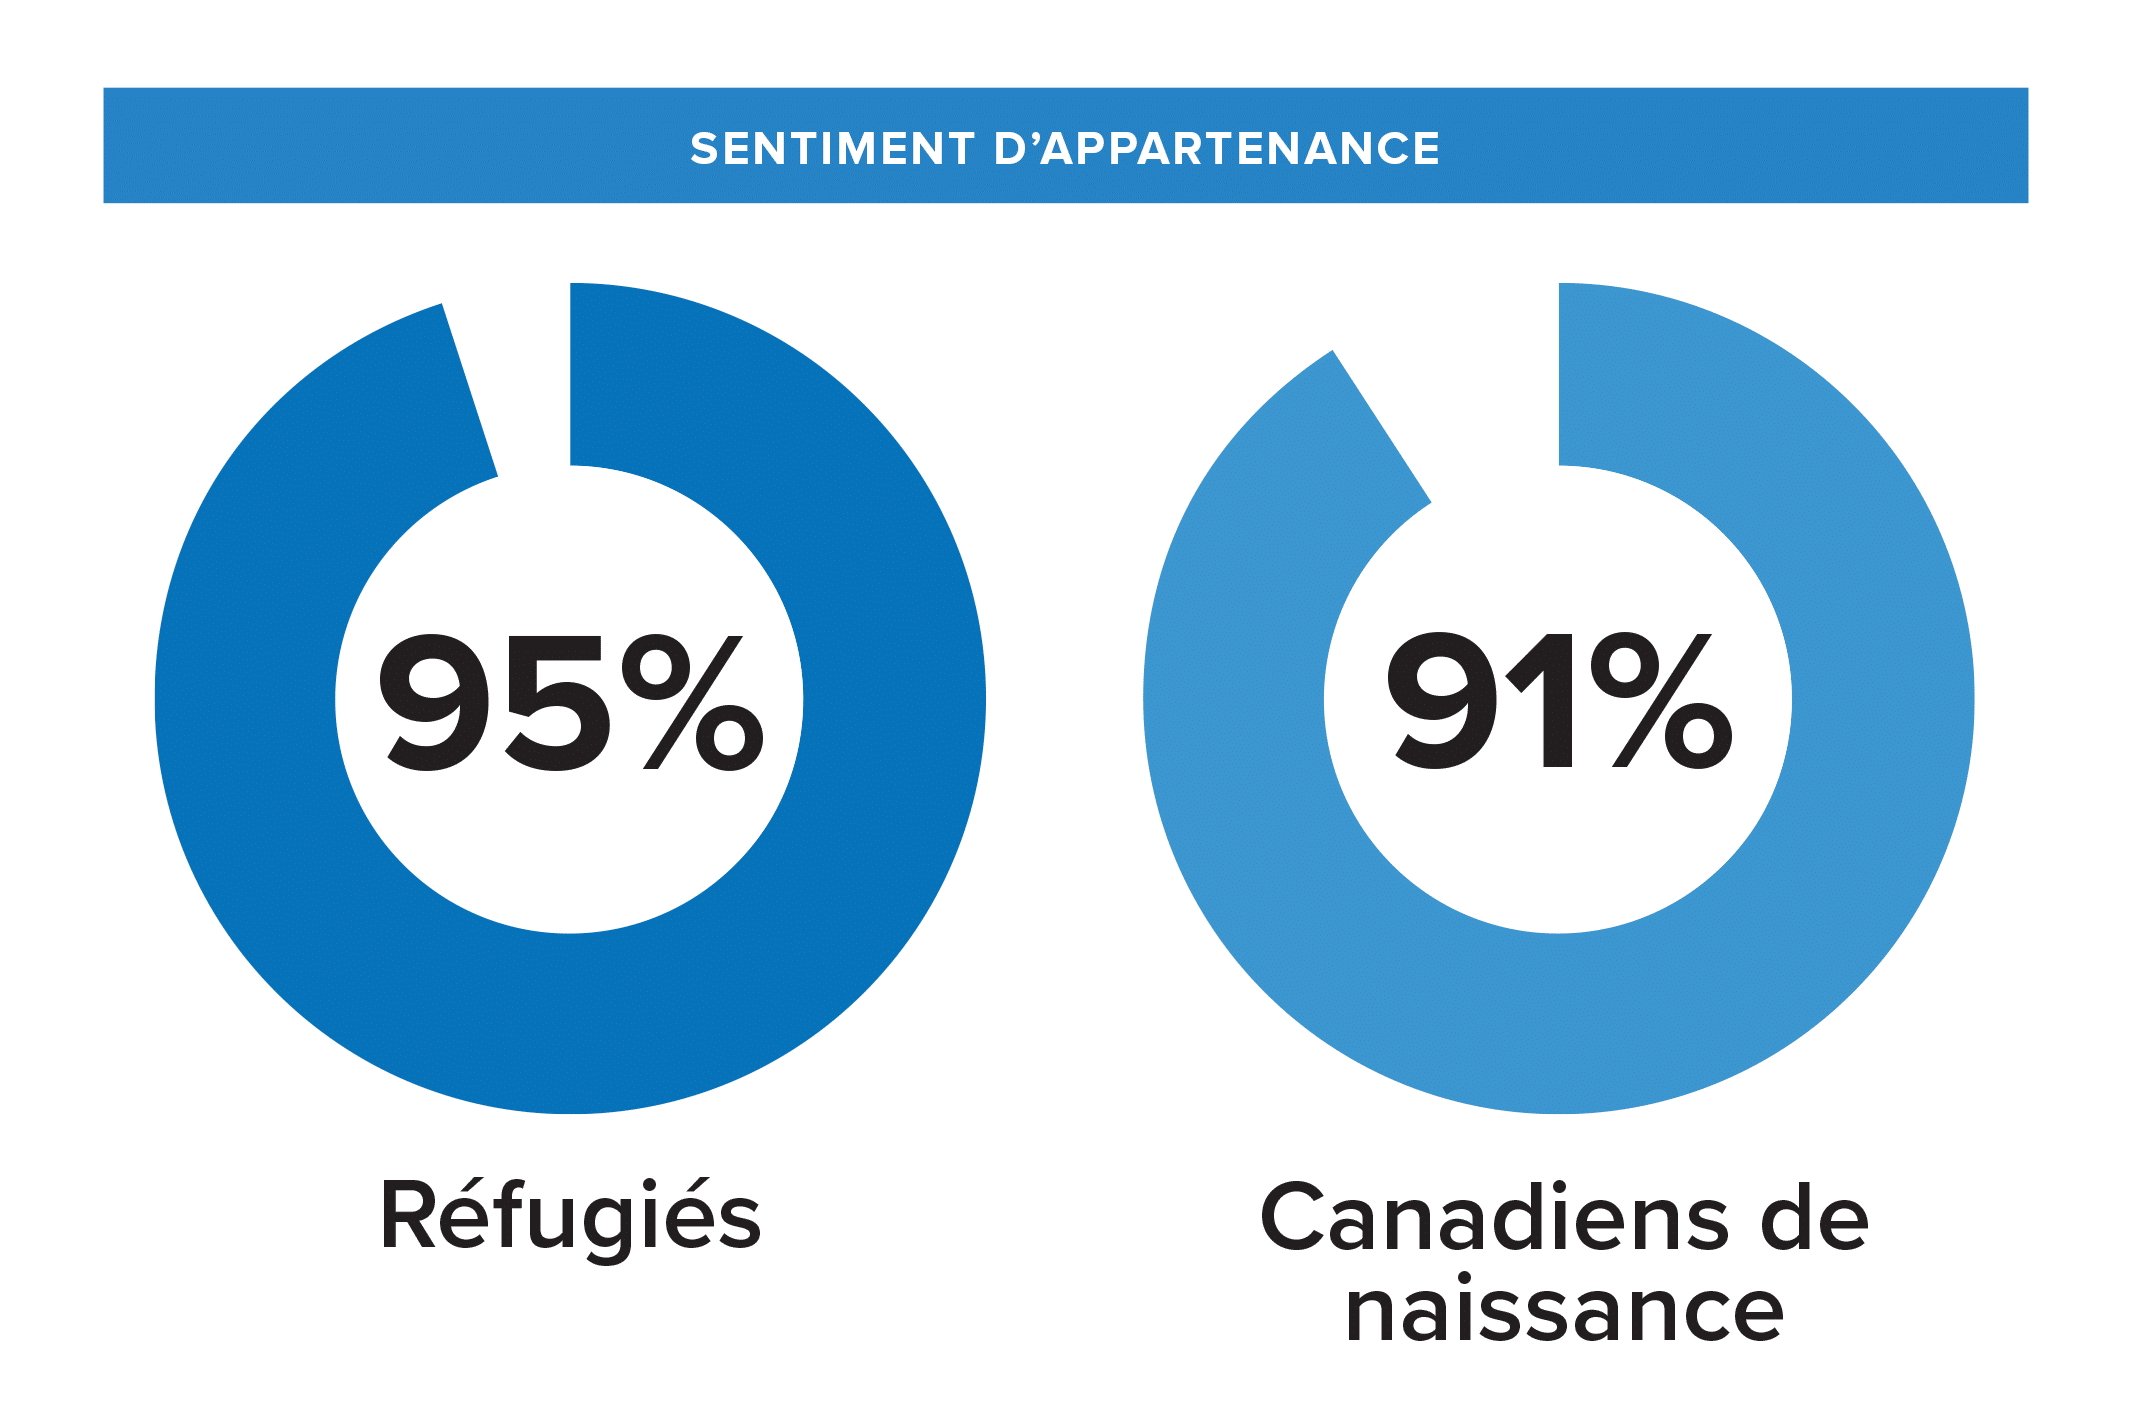 Graphique montrant les taux de sentiment d’appartenance pour les réfugiés et les Canadiens de naissance.